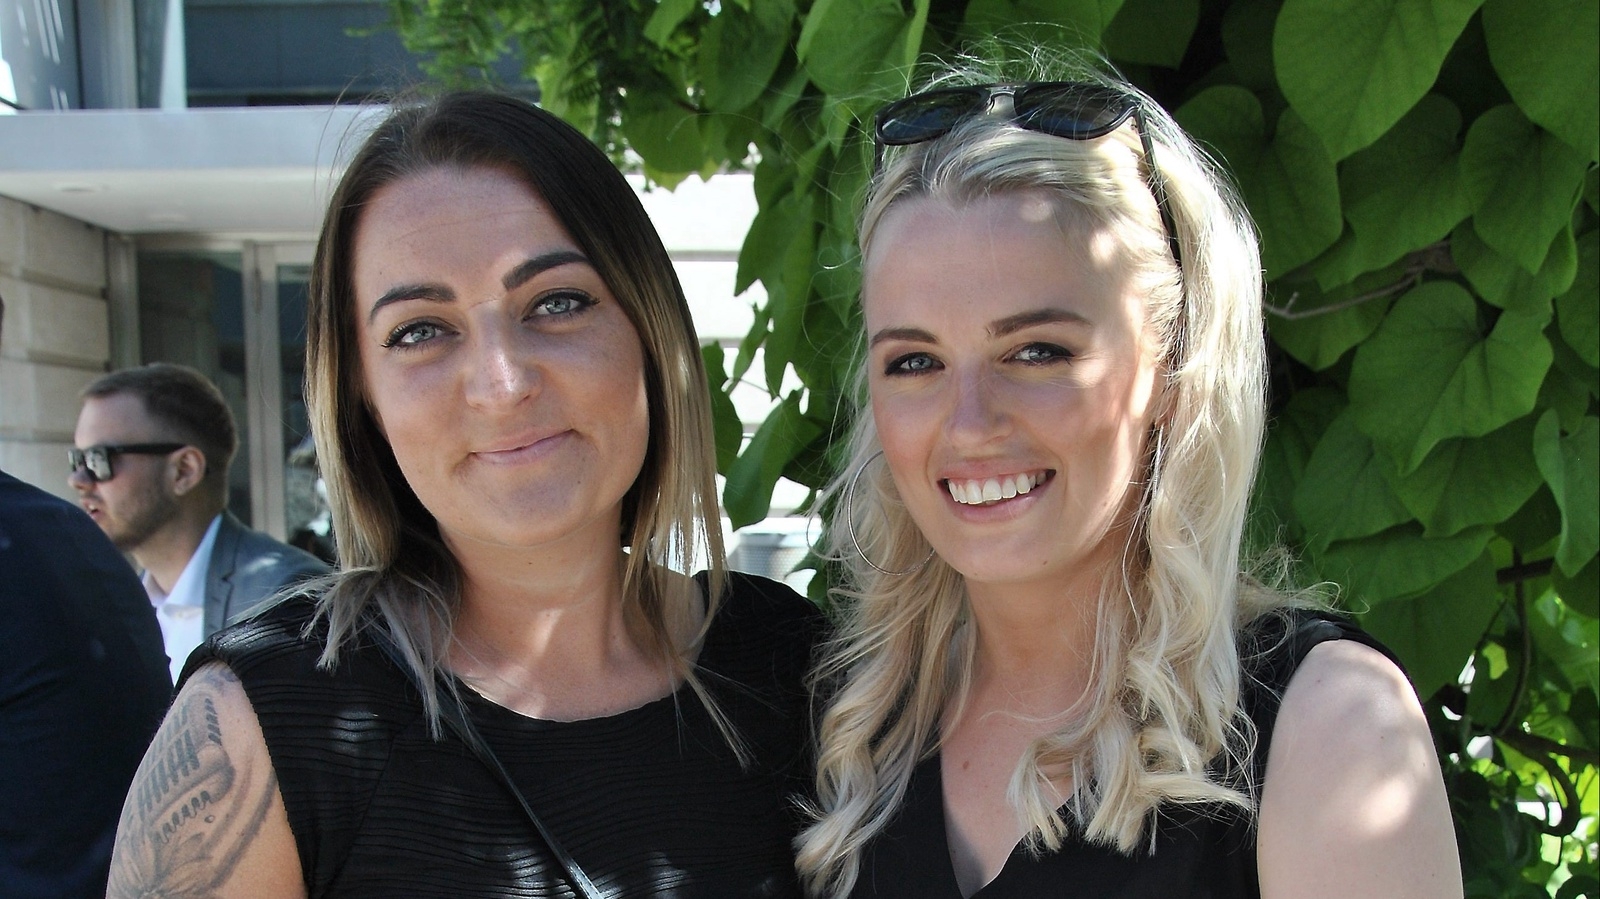 Lykke Madsen Halmstad och Louise Svensson Ystad är två av de få kvinnor som tagit examen på Yrkeshögskolan Syd.
Foto: Hans Bryngelson